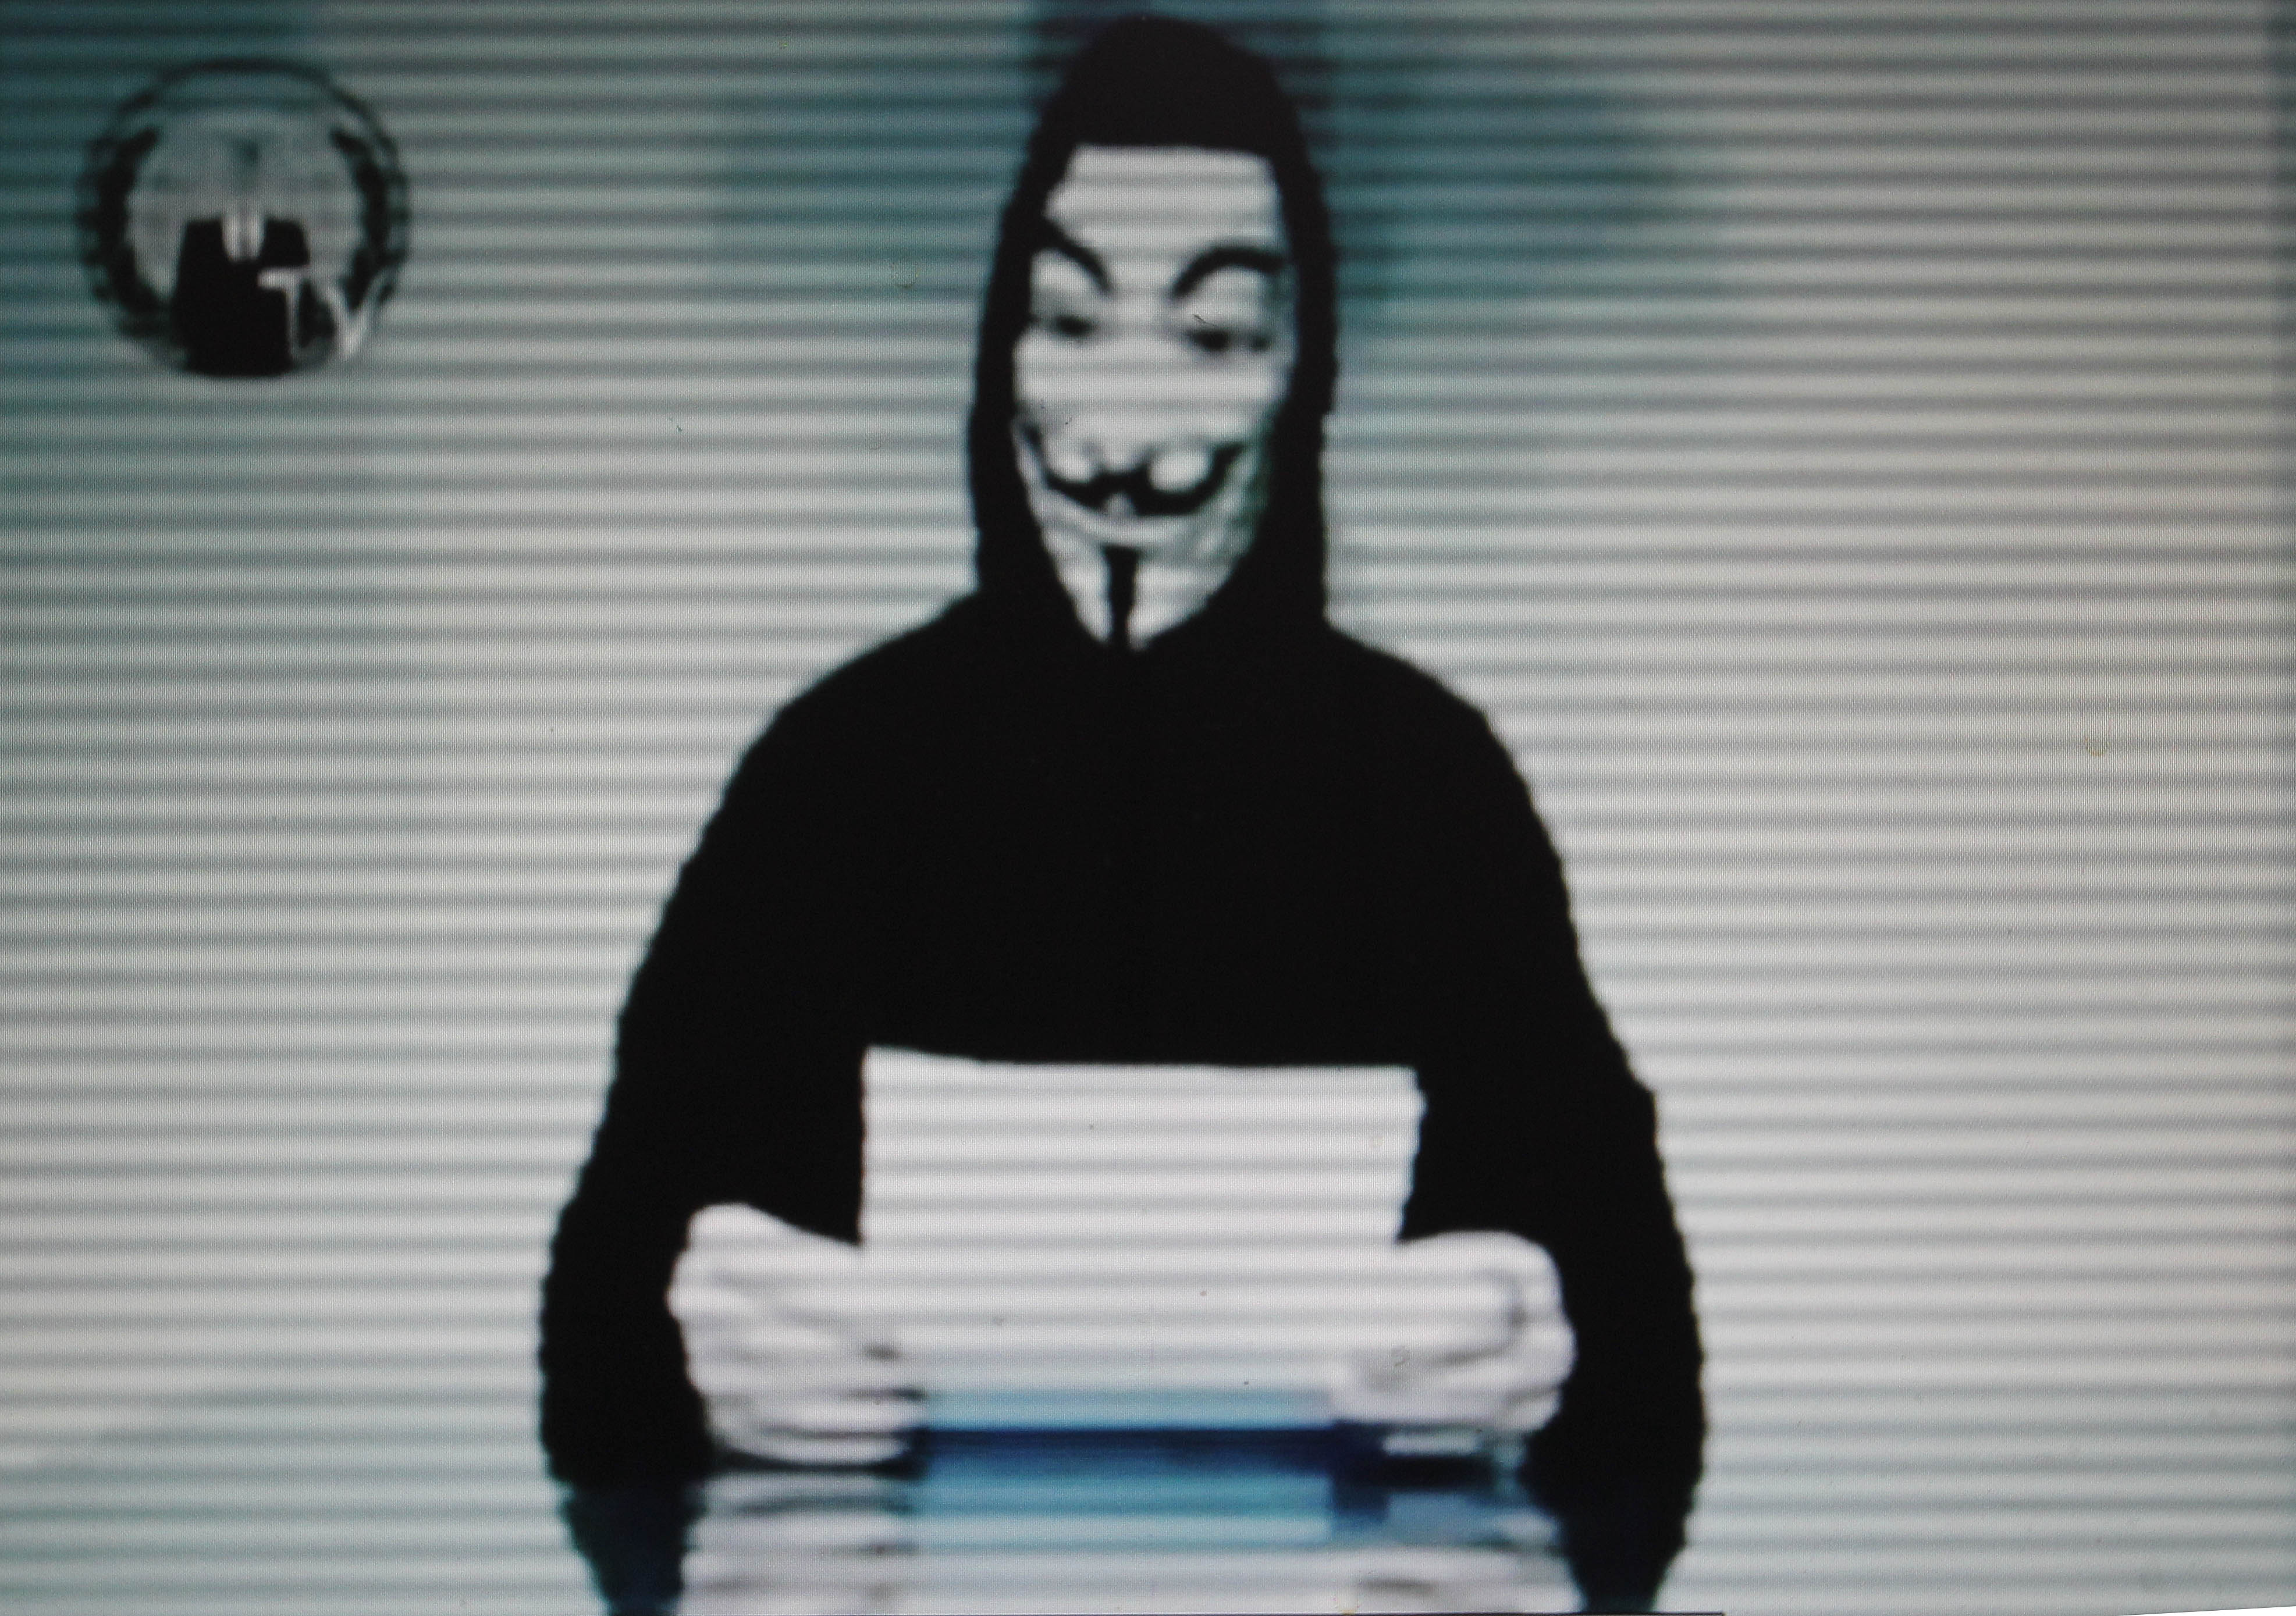 På twitterkonton kopplade till den svenska delen av det löst sammansatta hackerkollektivet Anonymous kunde man följa attacken mot regeringens hemsida.